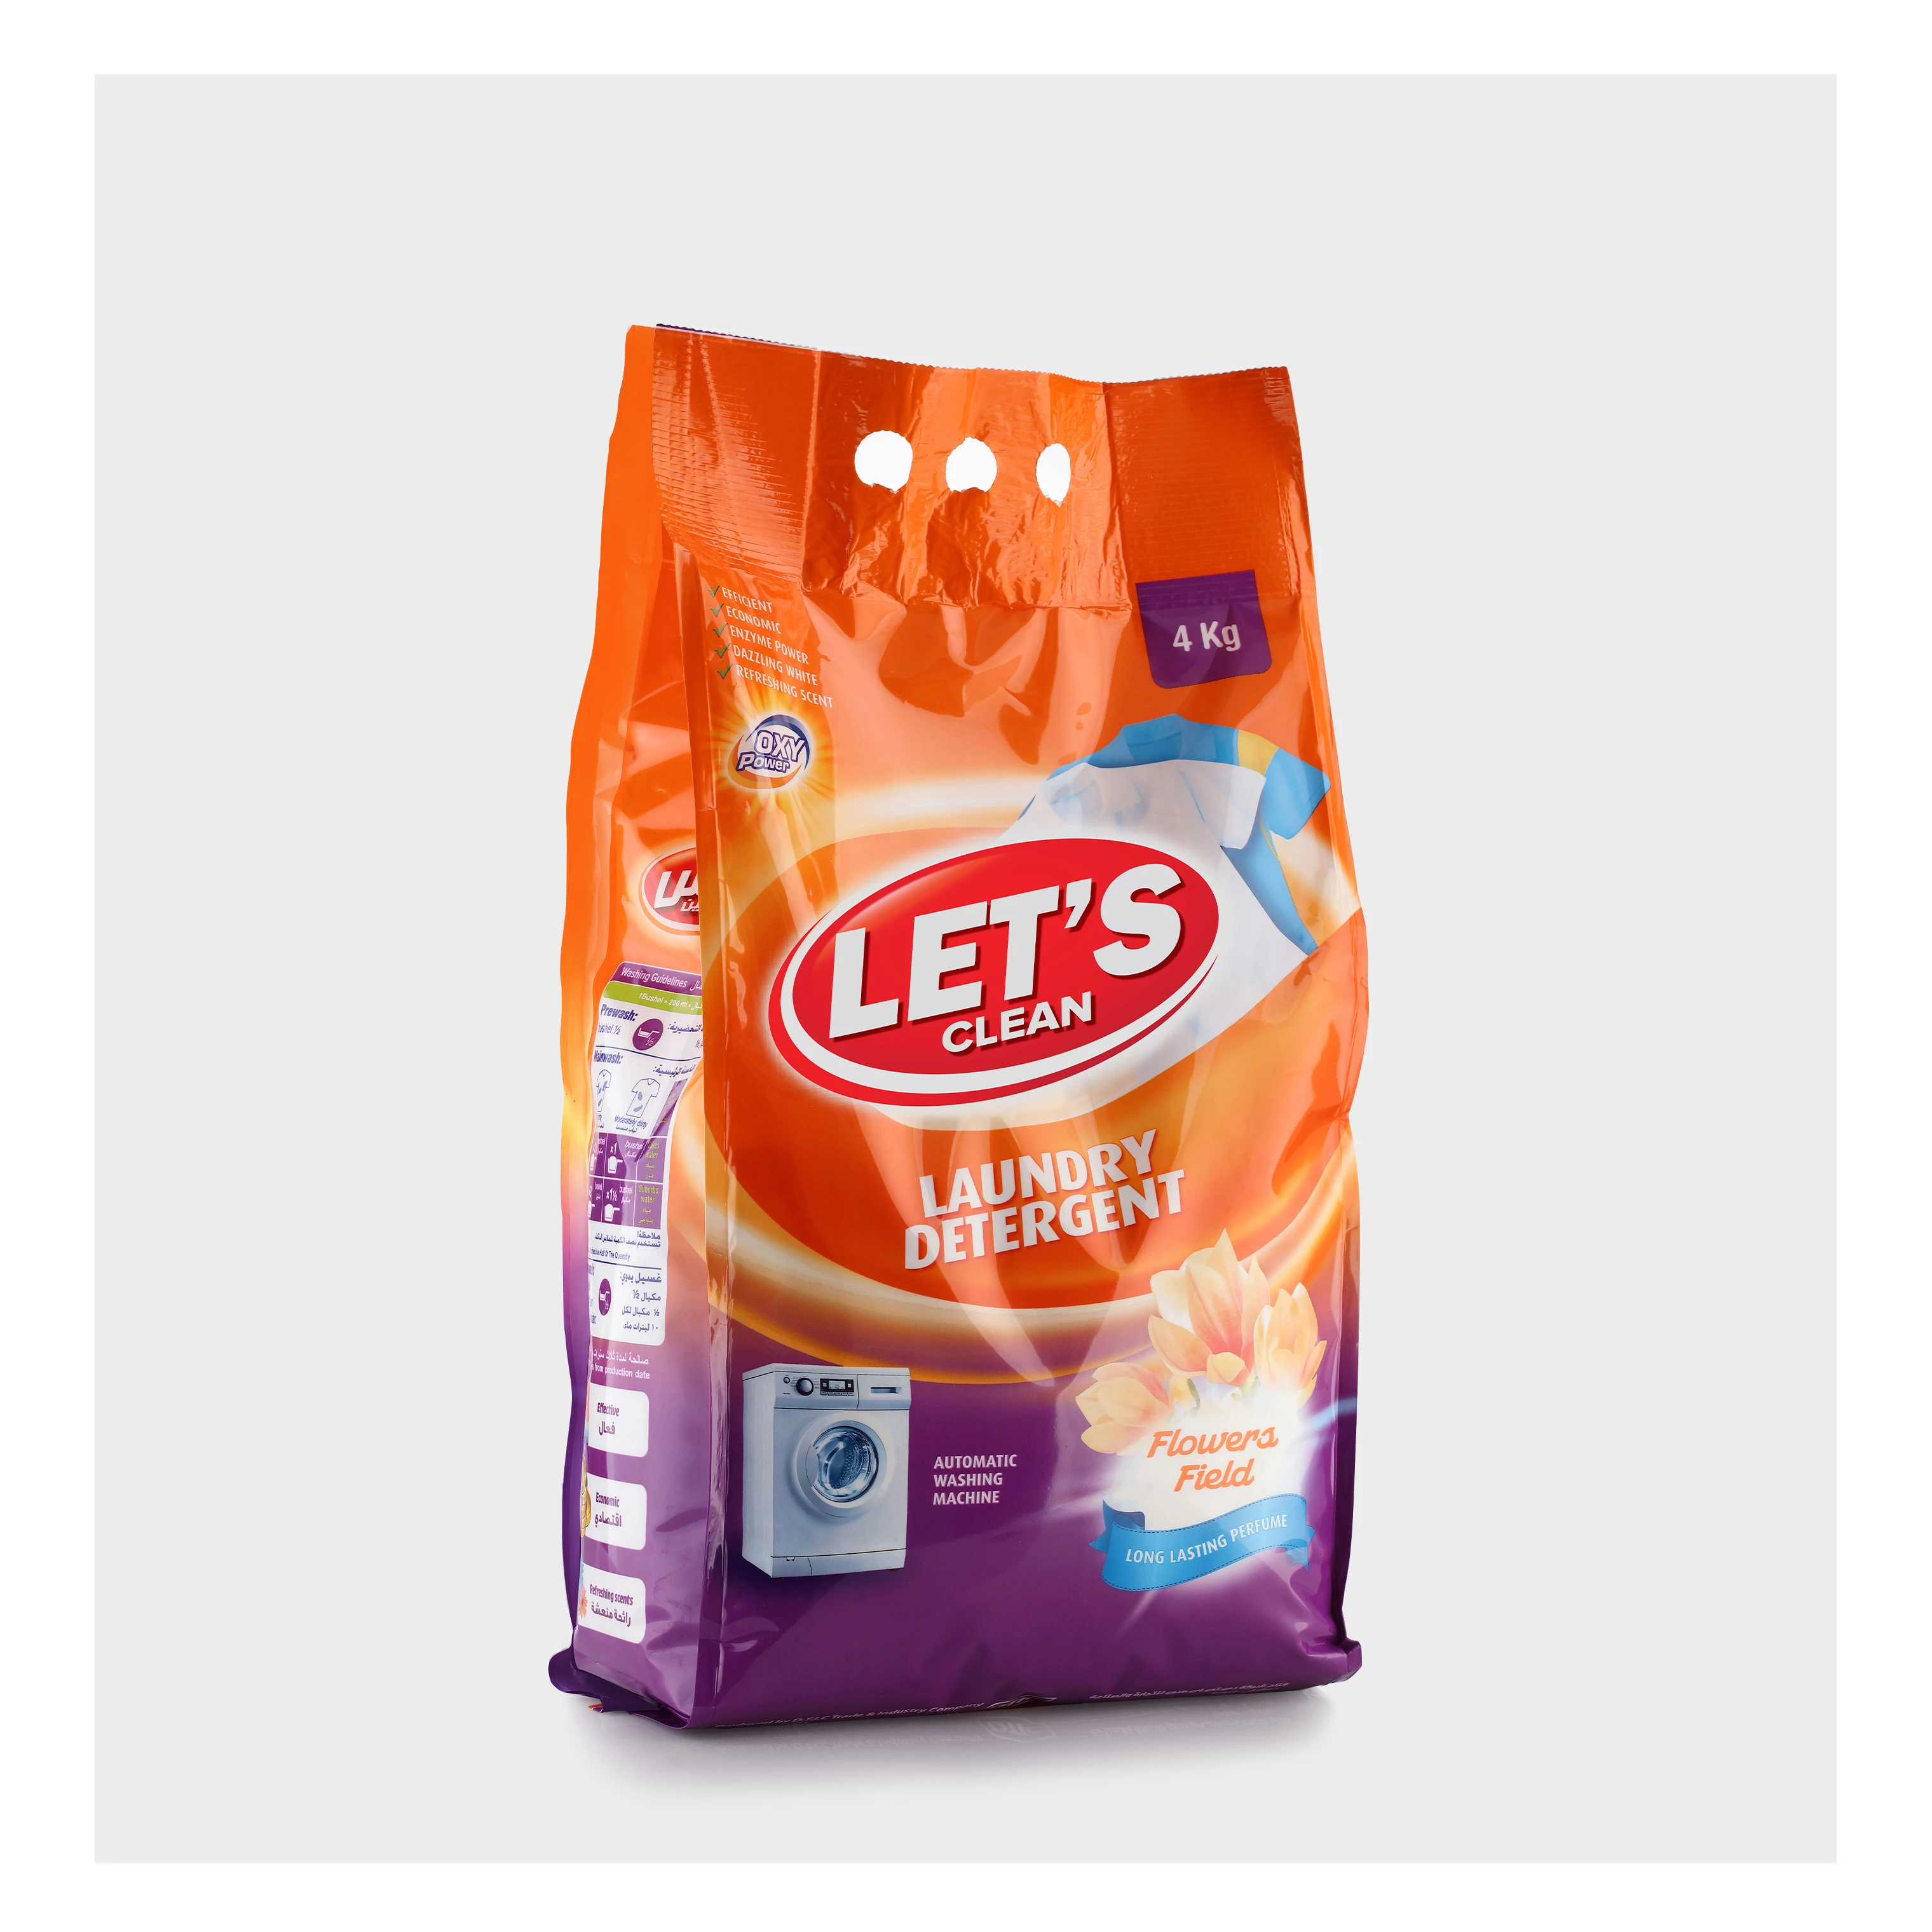 LET’S CLEAN Laundry Detergent Powder 4 Kg